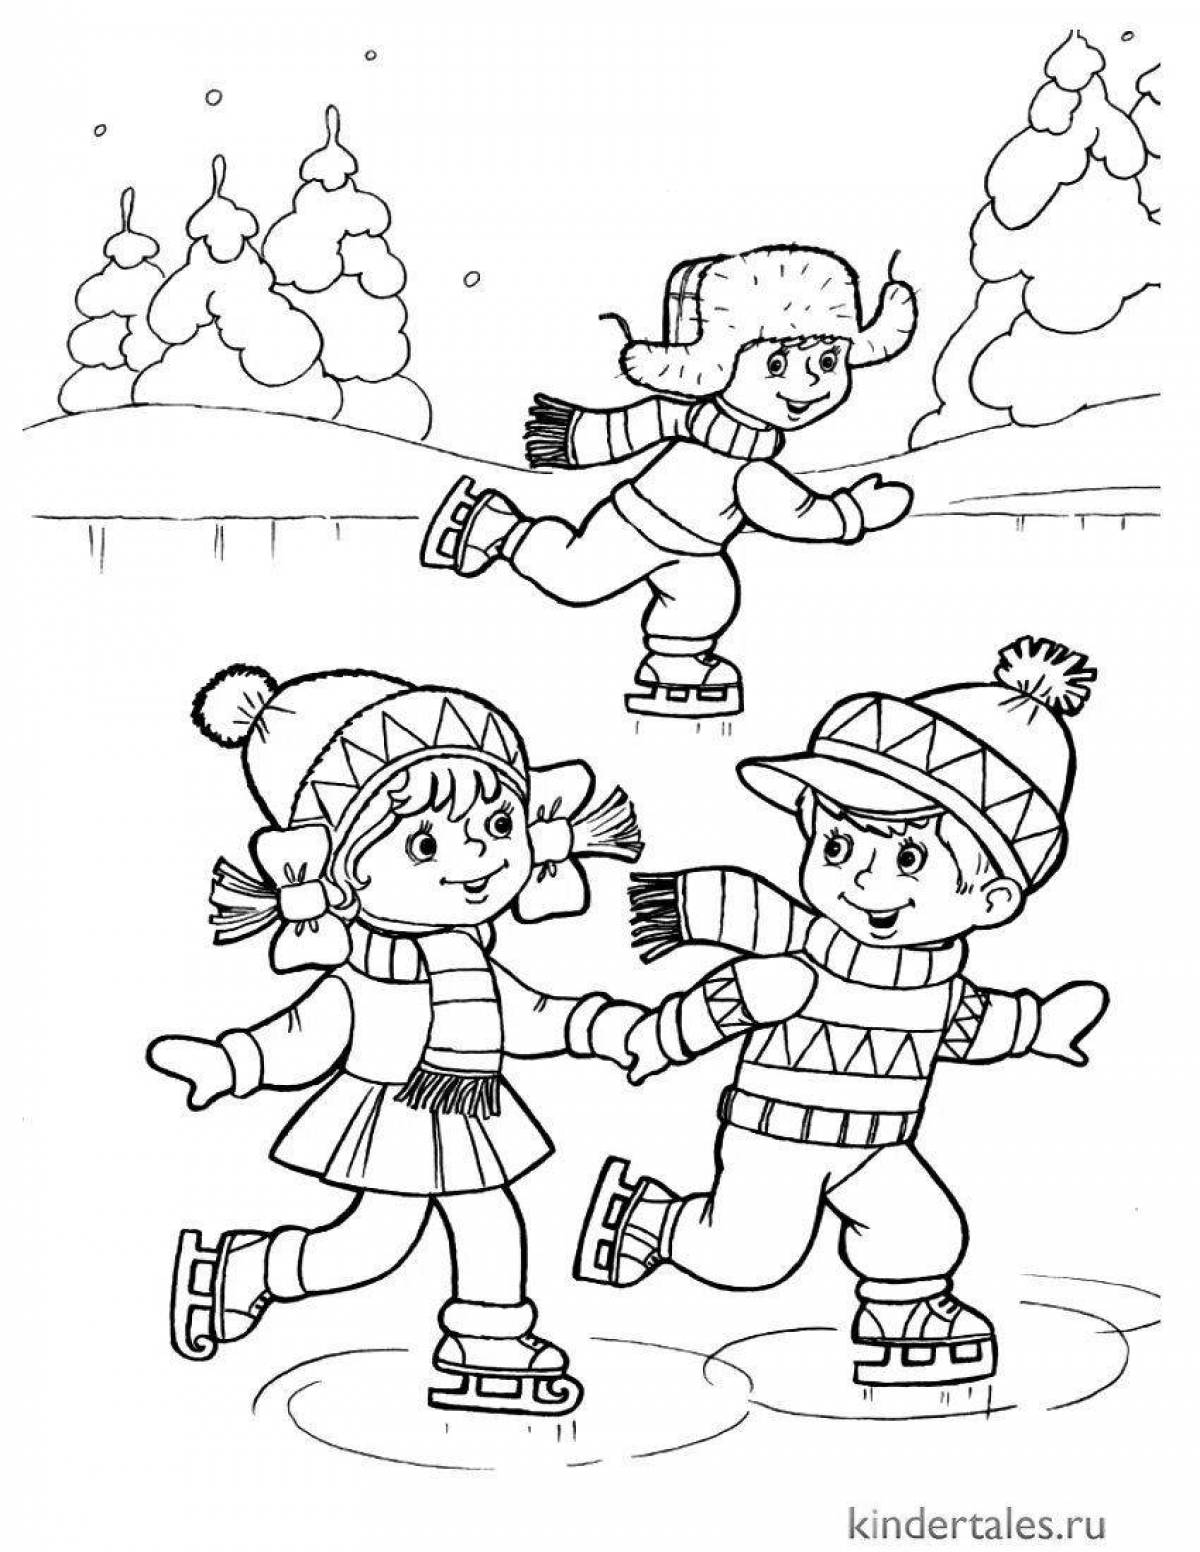 Adorable coloring book for winter fun